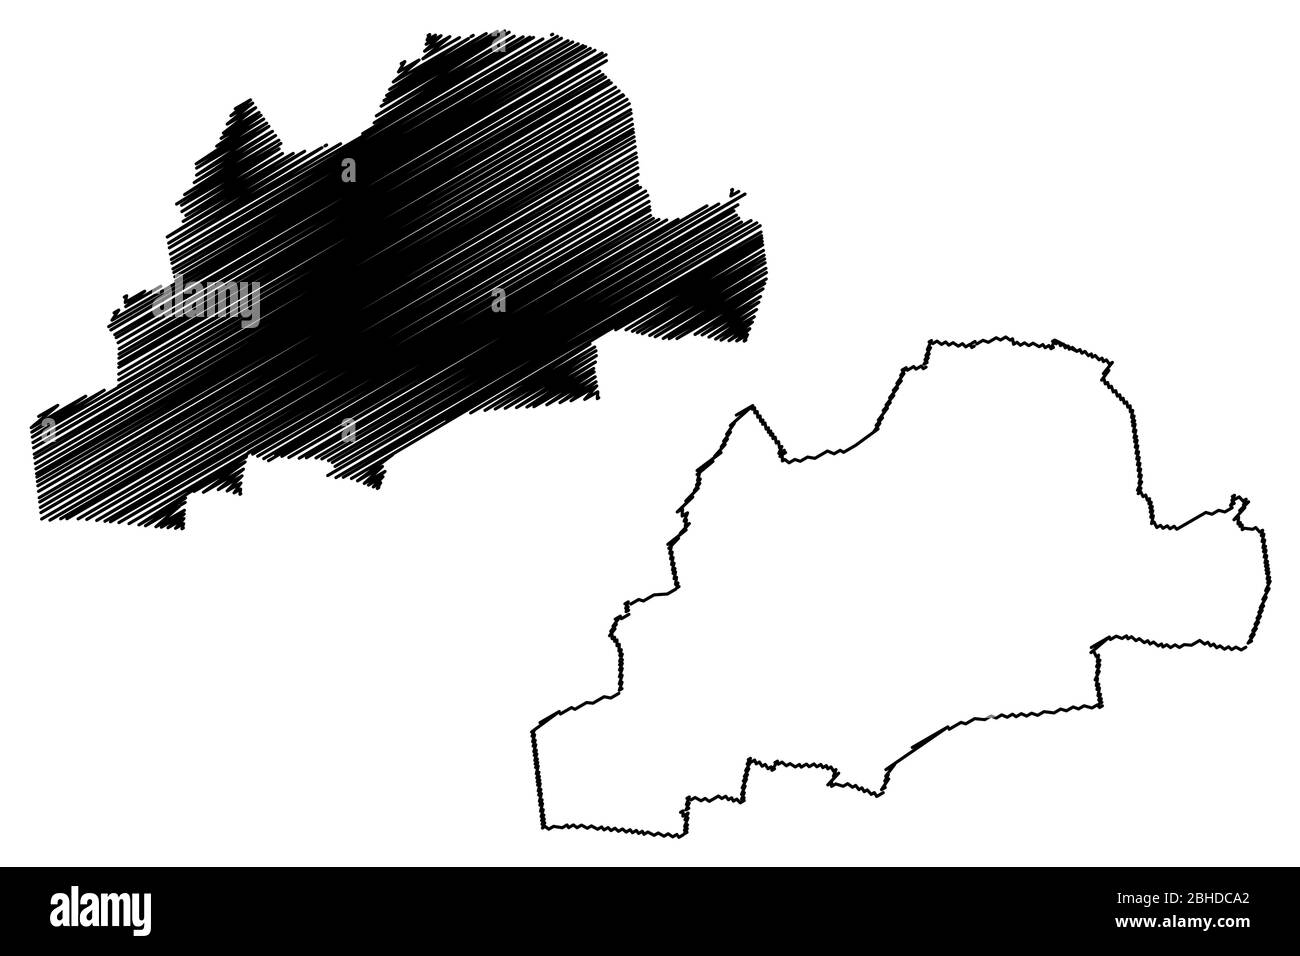 Ville de Montreuil (République française, France) illustration vectorielle cartographique, esquisse de griffonnage carte de la ville de Montreuil Illustration de Vecteur